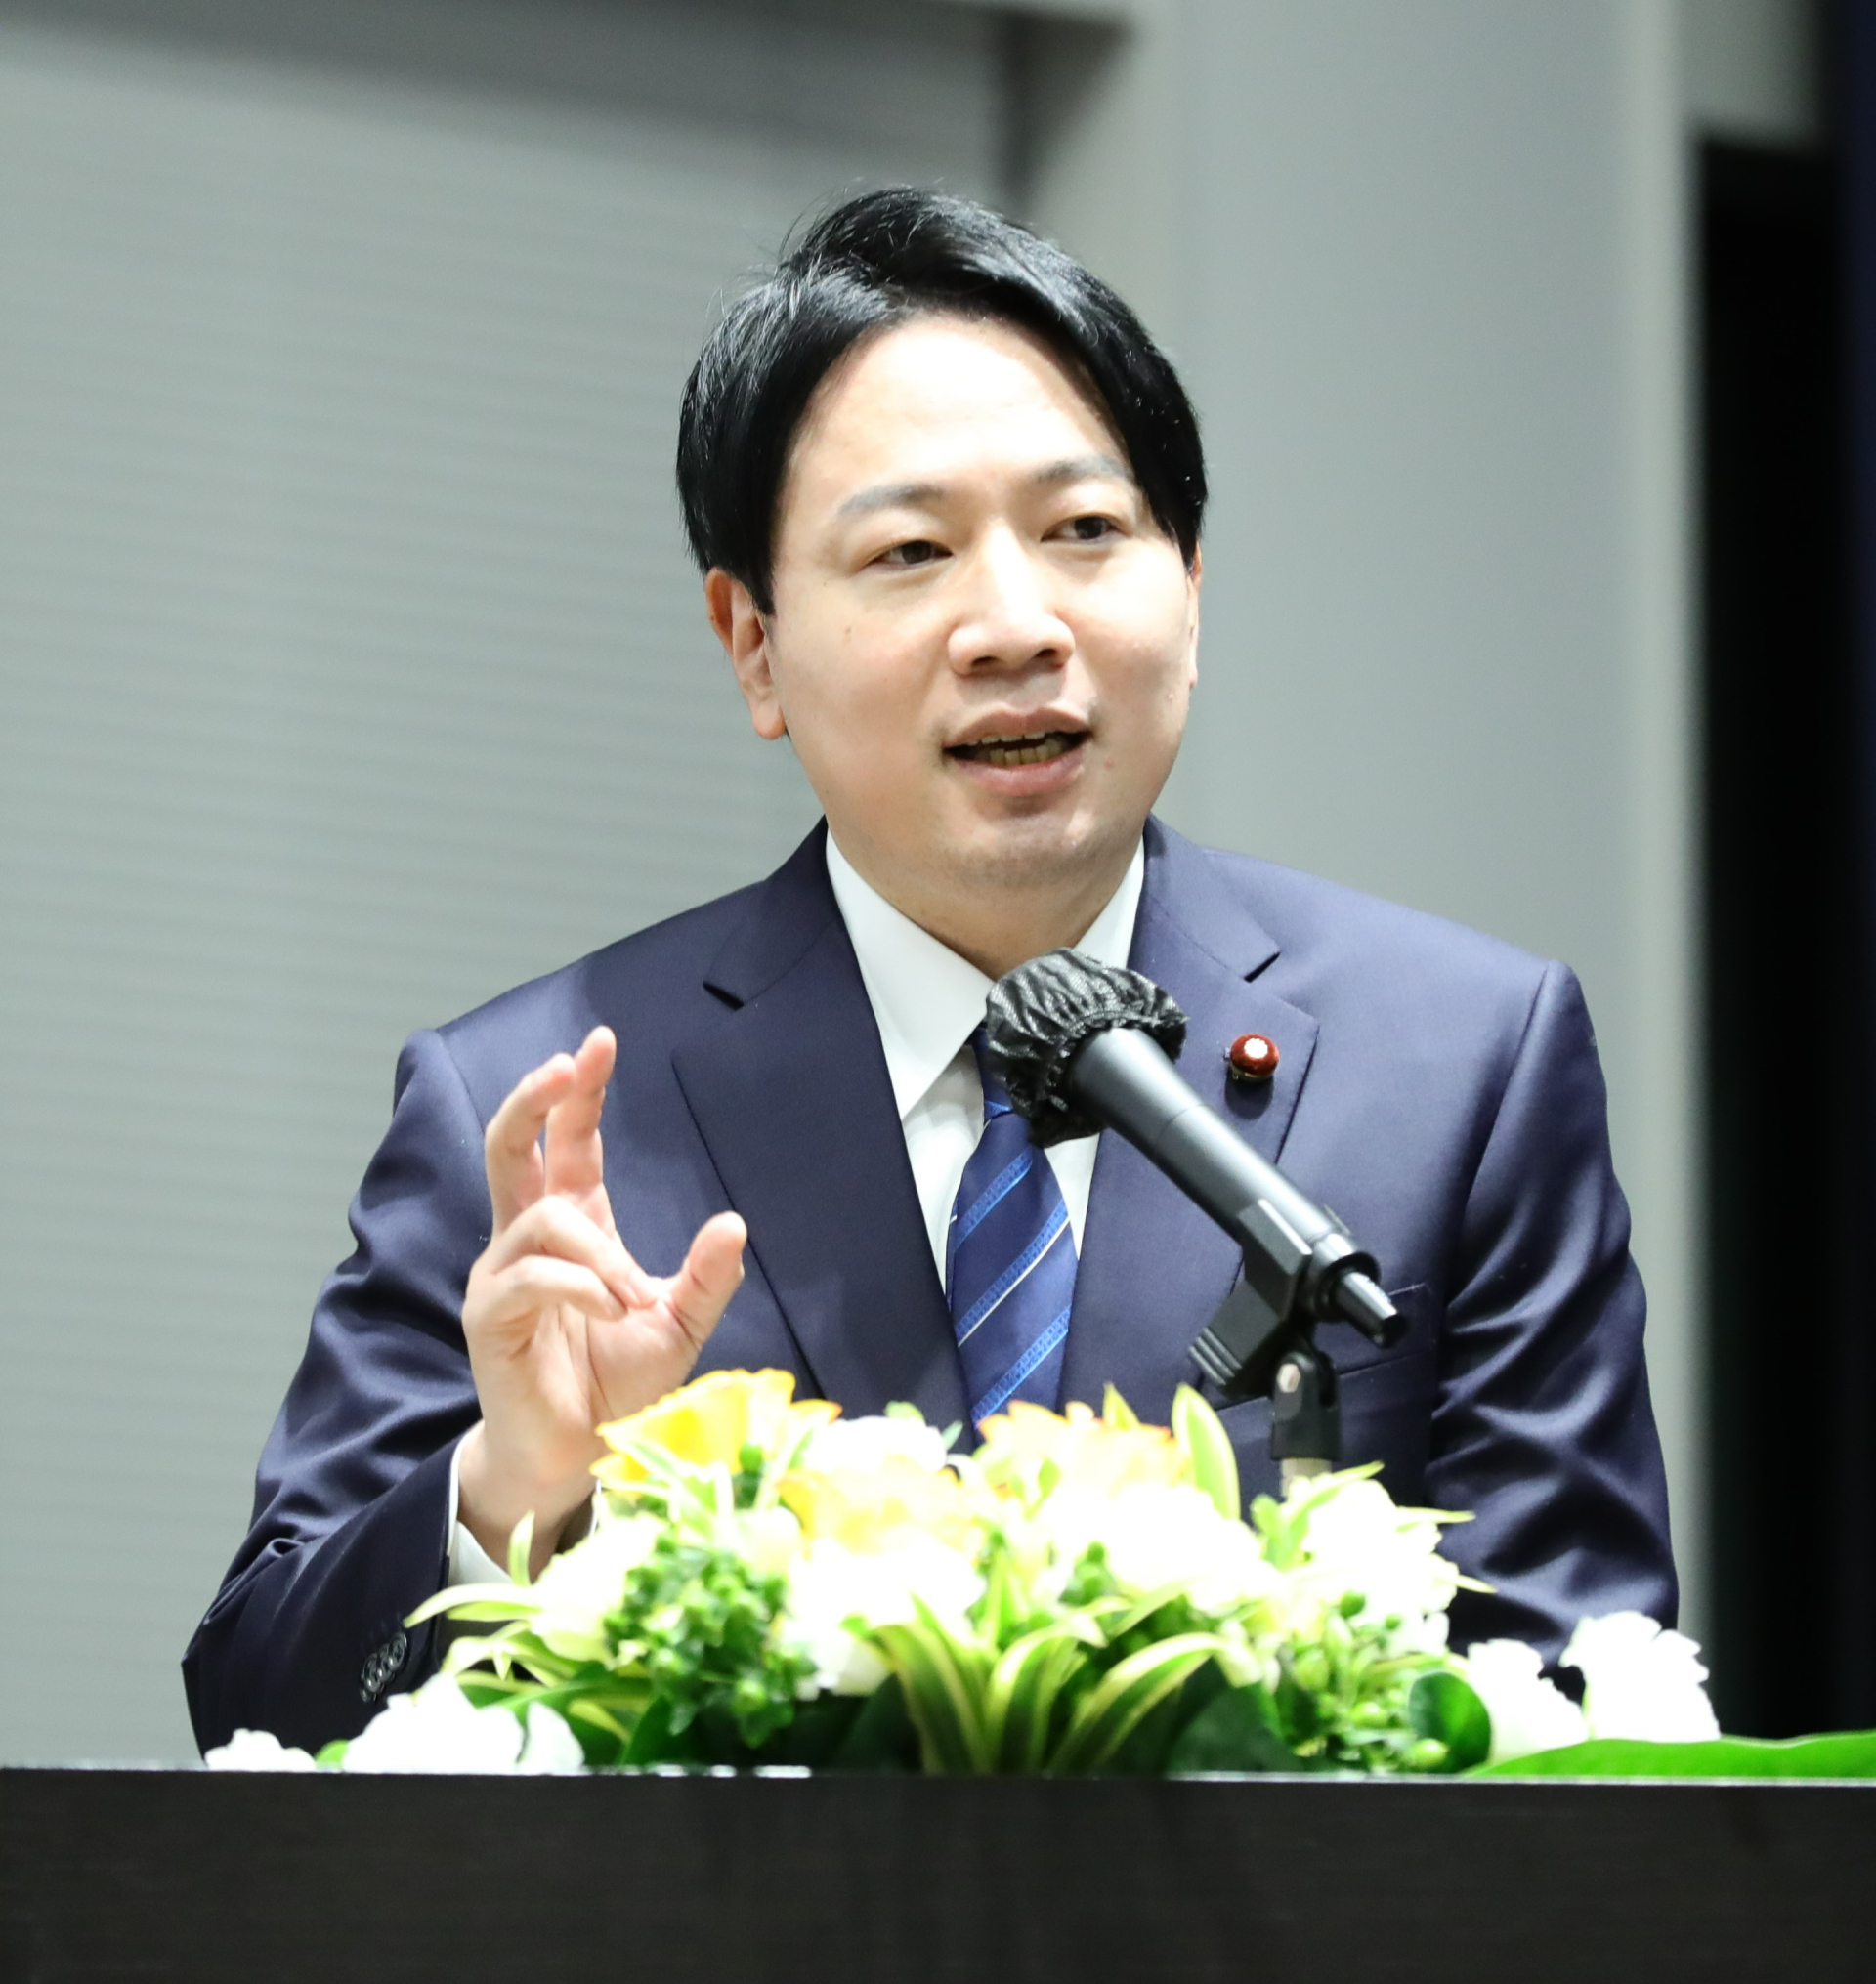 Japanese Minister Ogura at the podium